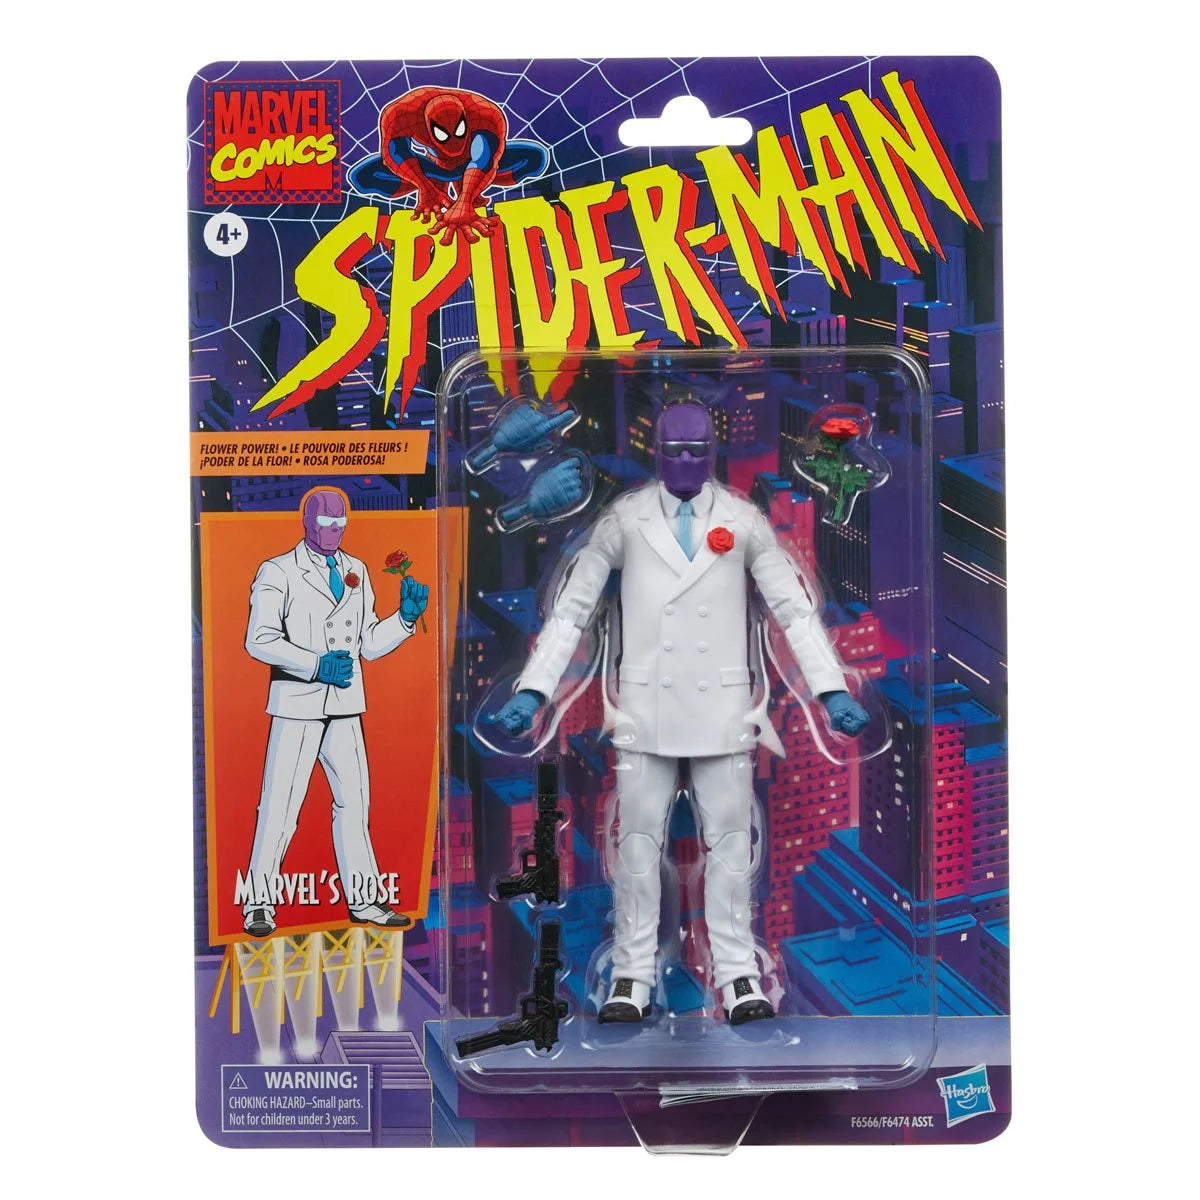 Marvel Legends Spider-Man Marvel's Rose Action Figure Toy